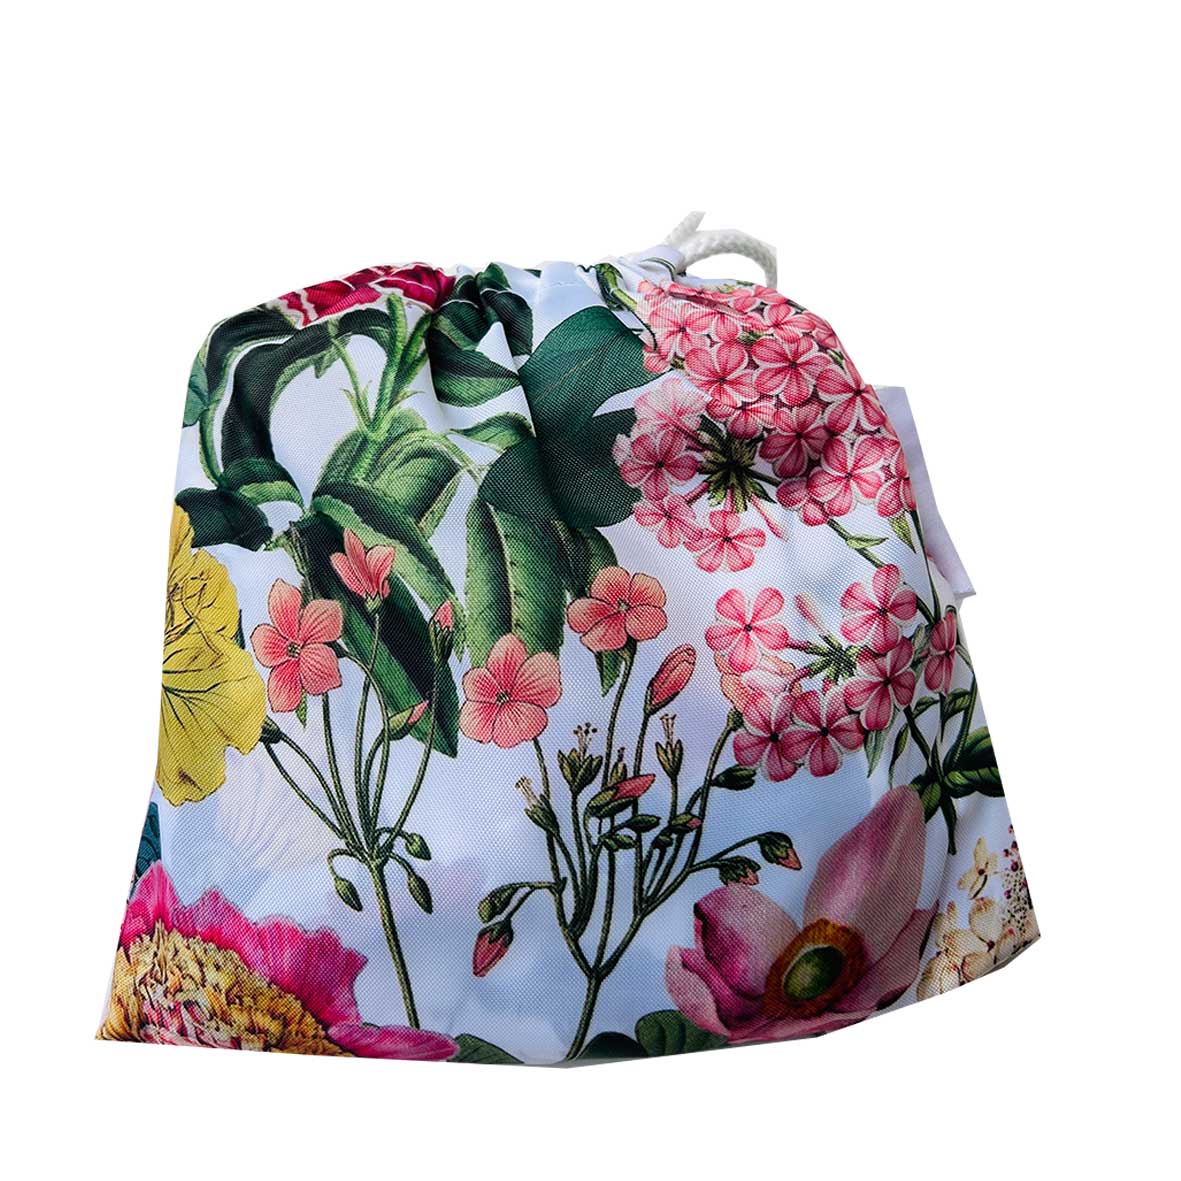 Poncho (waterproof, inc bag) - Flowerbed Brights